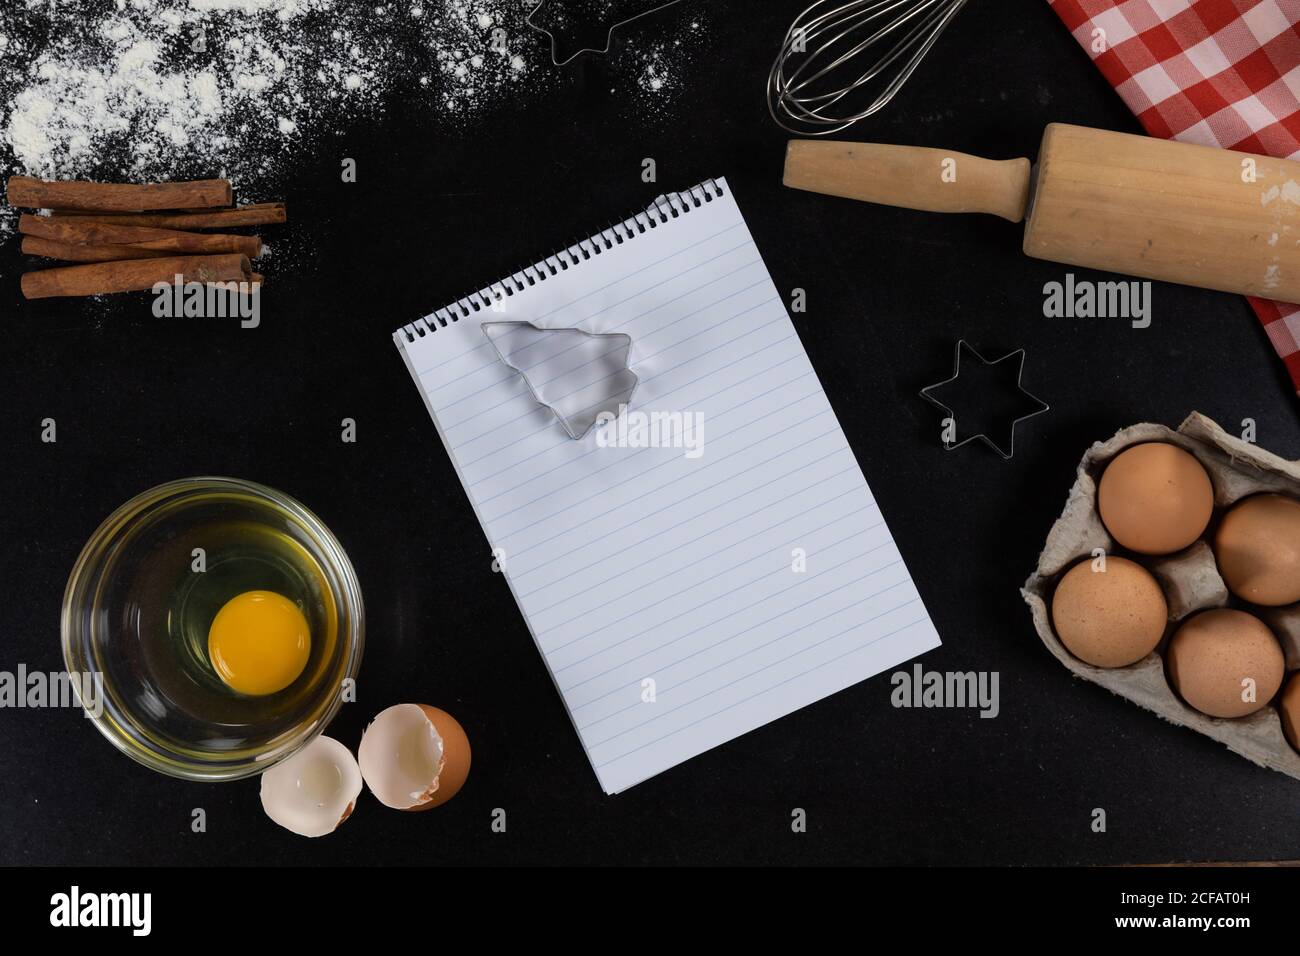 Vista di una pagina vuota del notebook con ingredienti preparati per cuocere i biscotti, disposti su una bla semplice Foto Stock